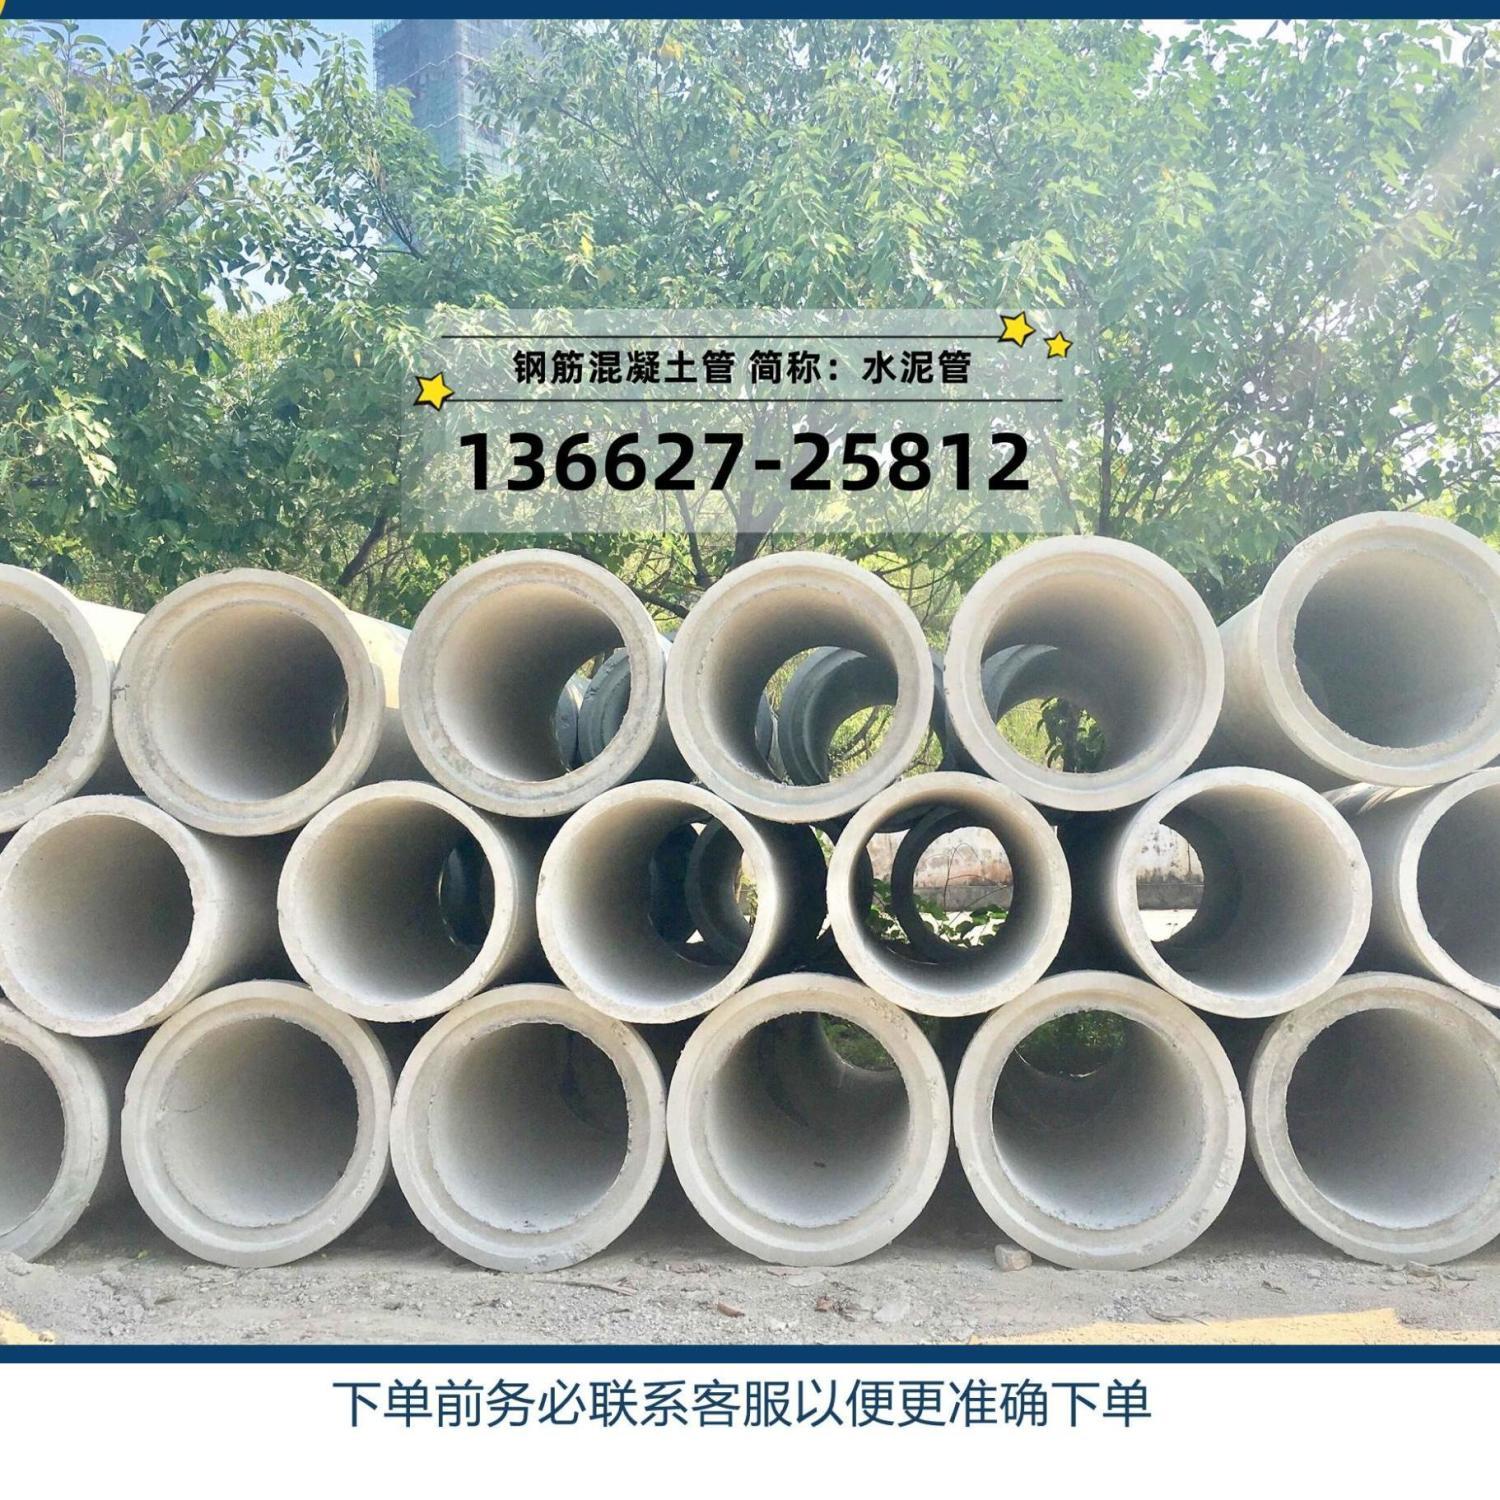 水泥管、下水道涵管、排污水管、雨水排水管 仅限广东地区直供